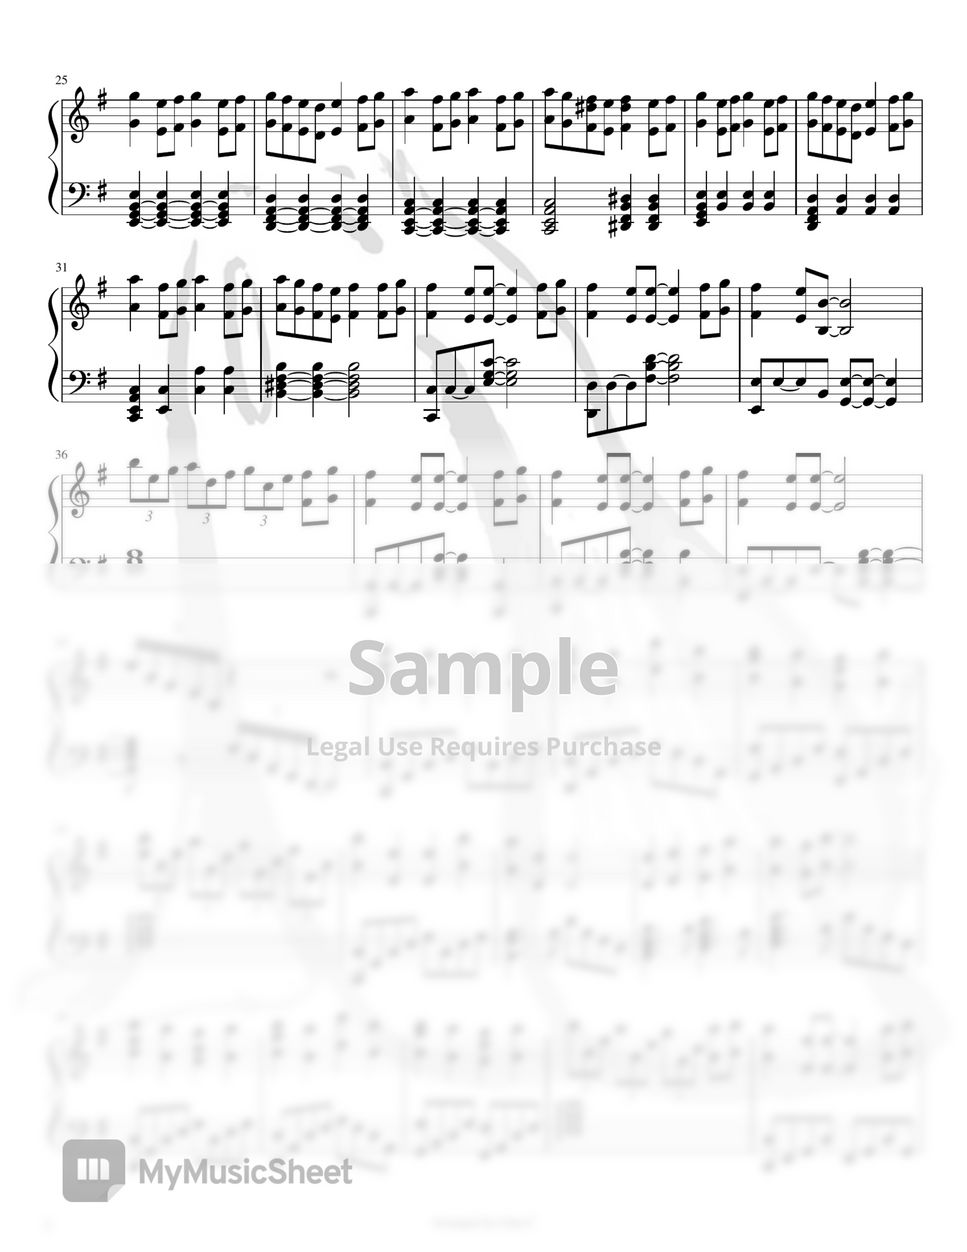 島谷ひとみ - Destiny-太陽の花-ブラック・ジャック21 Black Jack21 OP (Anime Song Sheet Music Piano ver) by Lilac.C